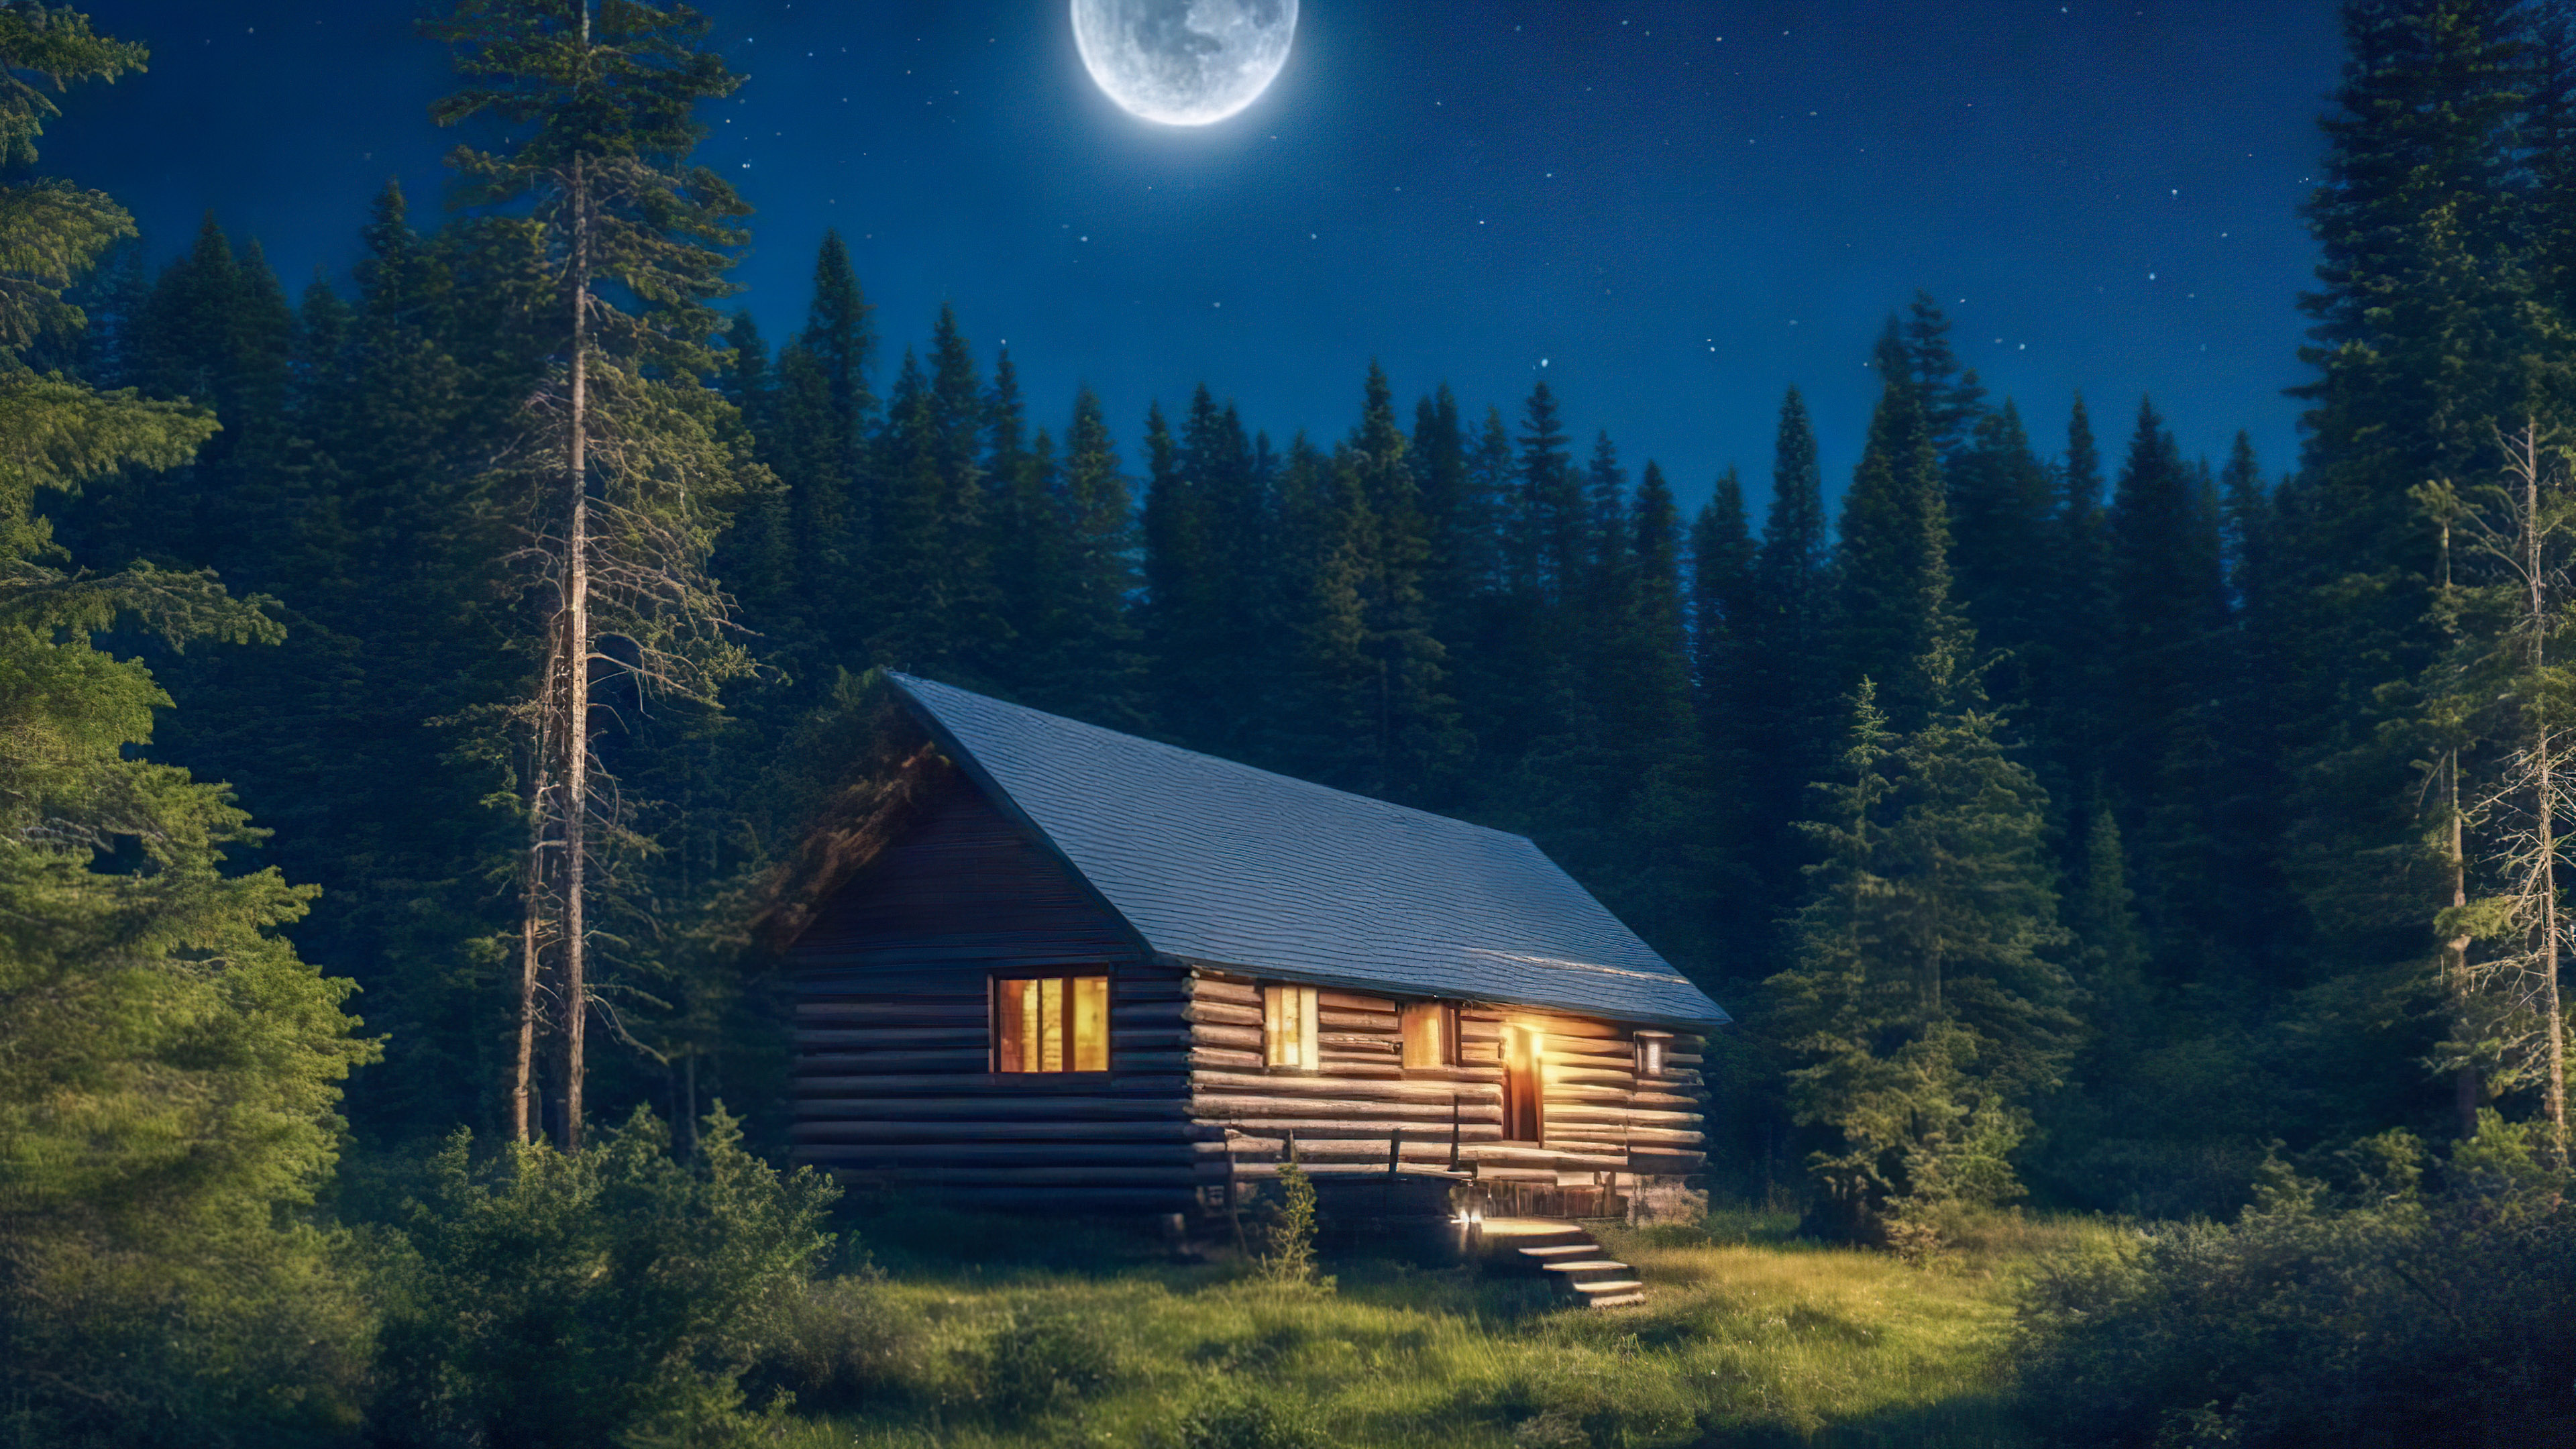 Ornez votre PC avec un fond d'écran de ciel nocturne en 4K, présentant une cabane douillette nichée parmi les pins, baignée par la douce lumière d'une pleine lune.